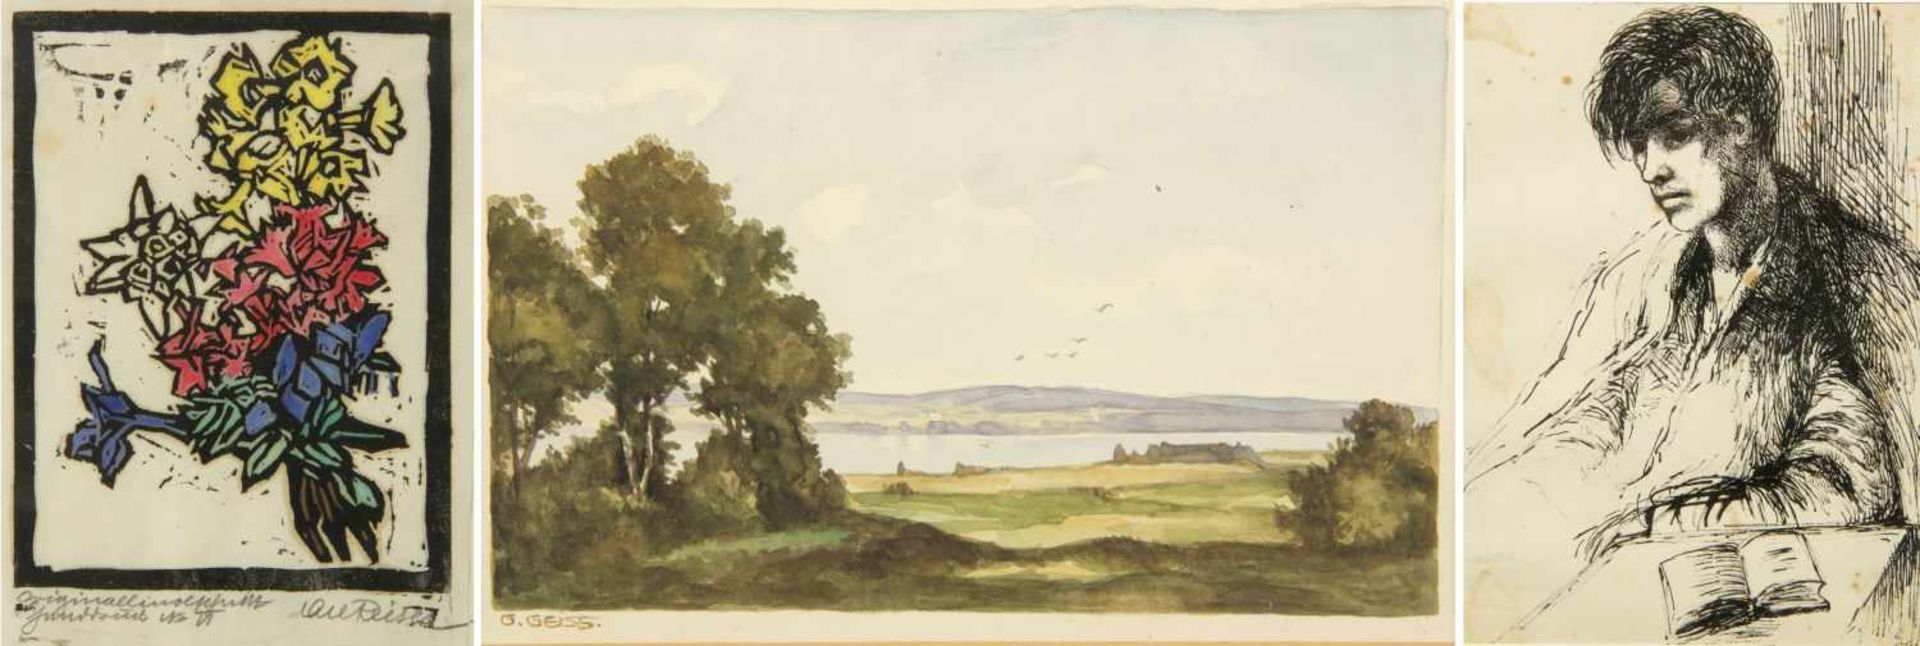 Nagel, Hanna. Geiss, G. Reiser, CarlJunger Mann mit Lektüre. Landschaft mit See. Blumenstrauß. 3